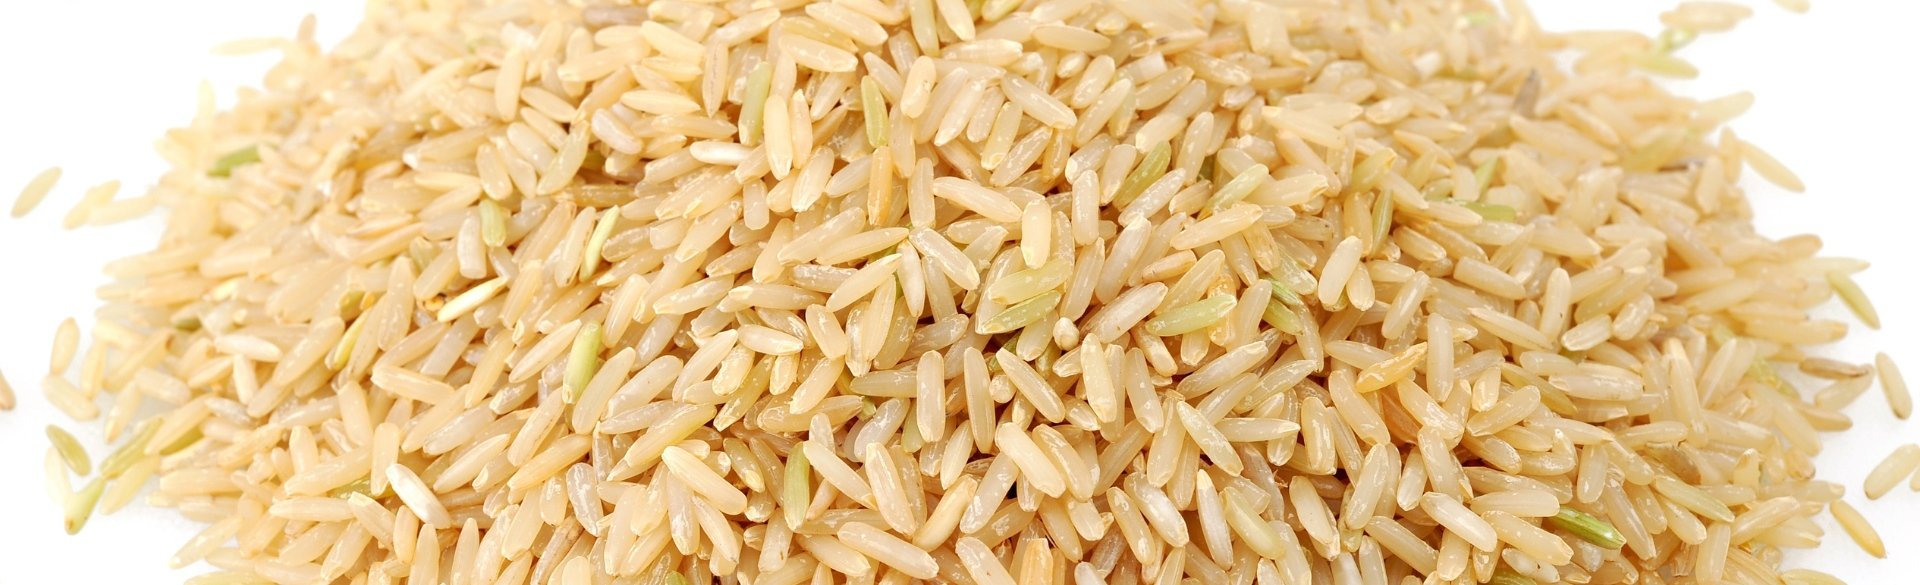 Rice bran